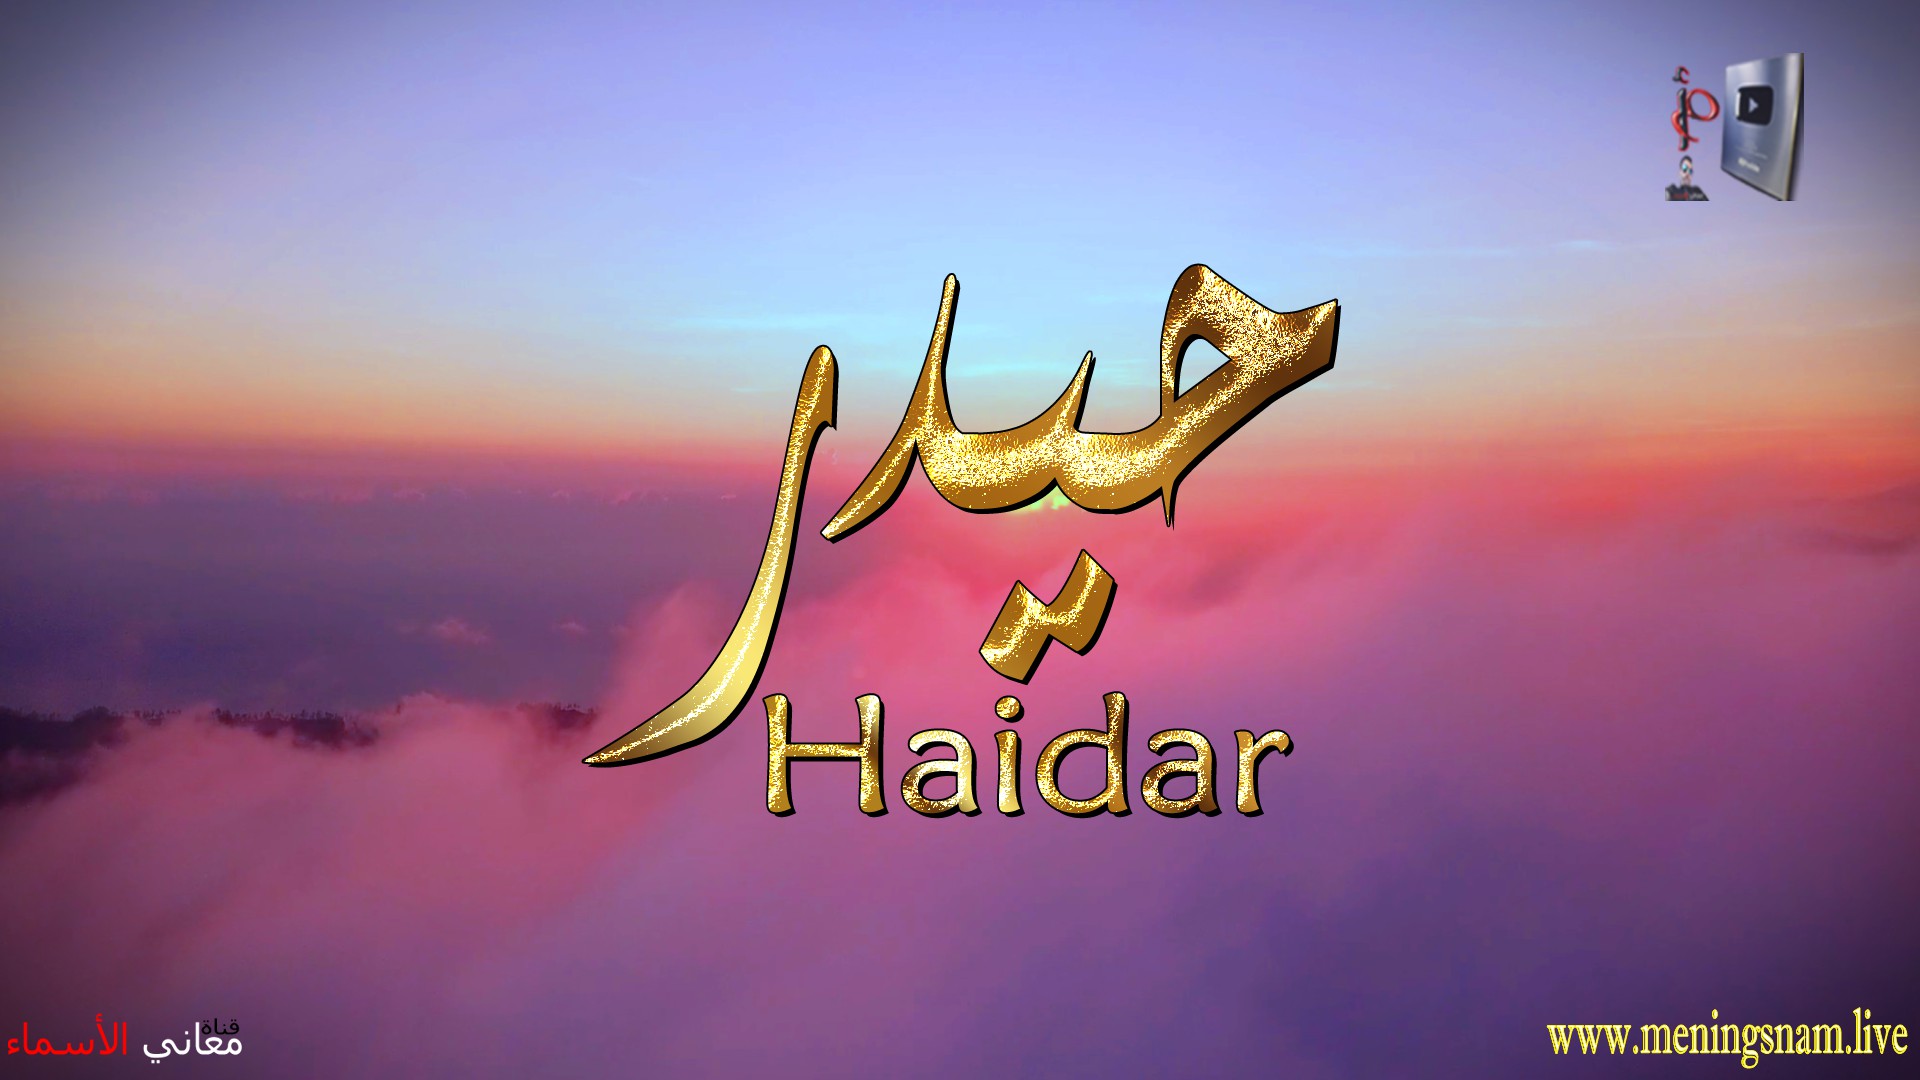 معنى اسم, حيدر, وصفات, حامل, هذا الاسم, Haidar,